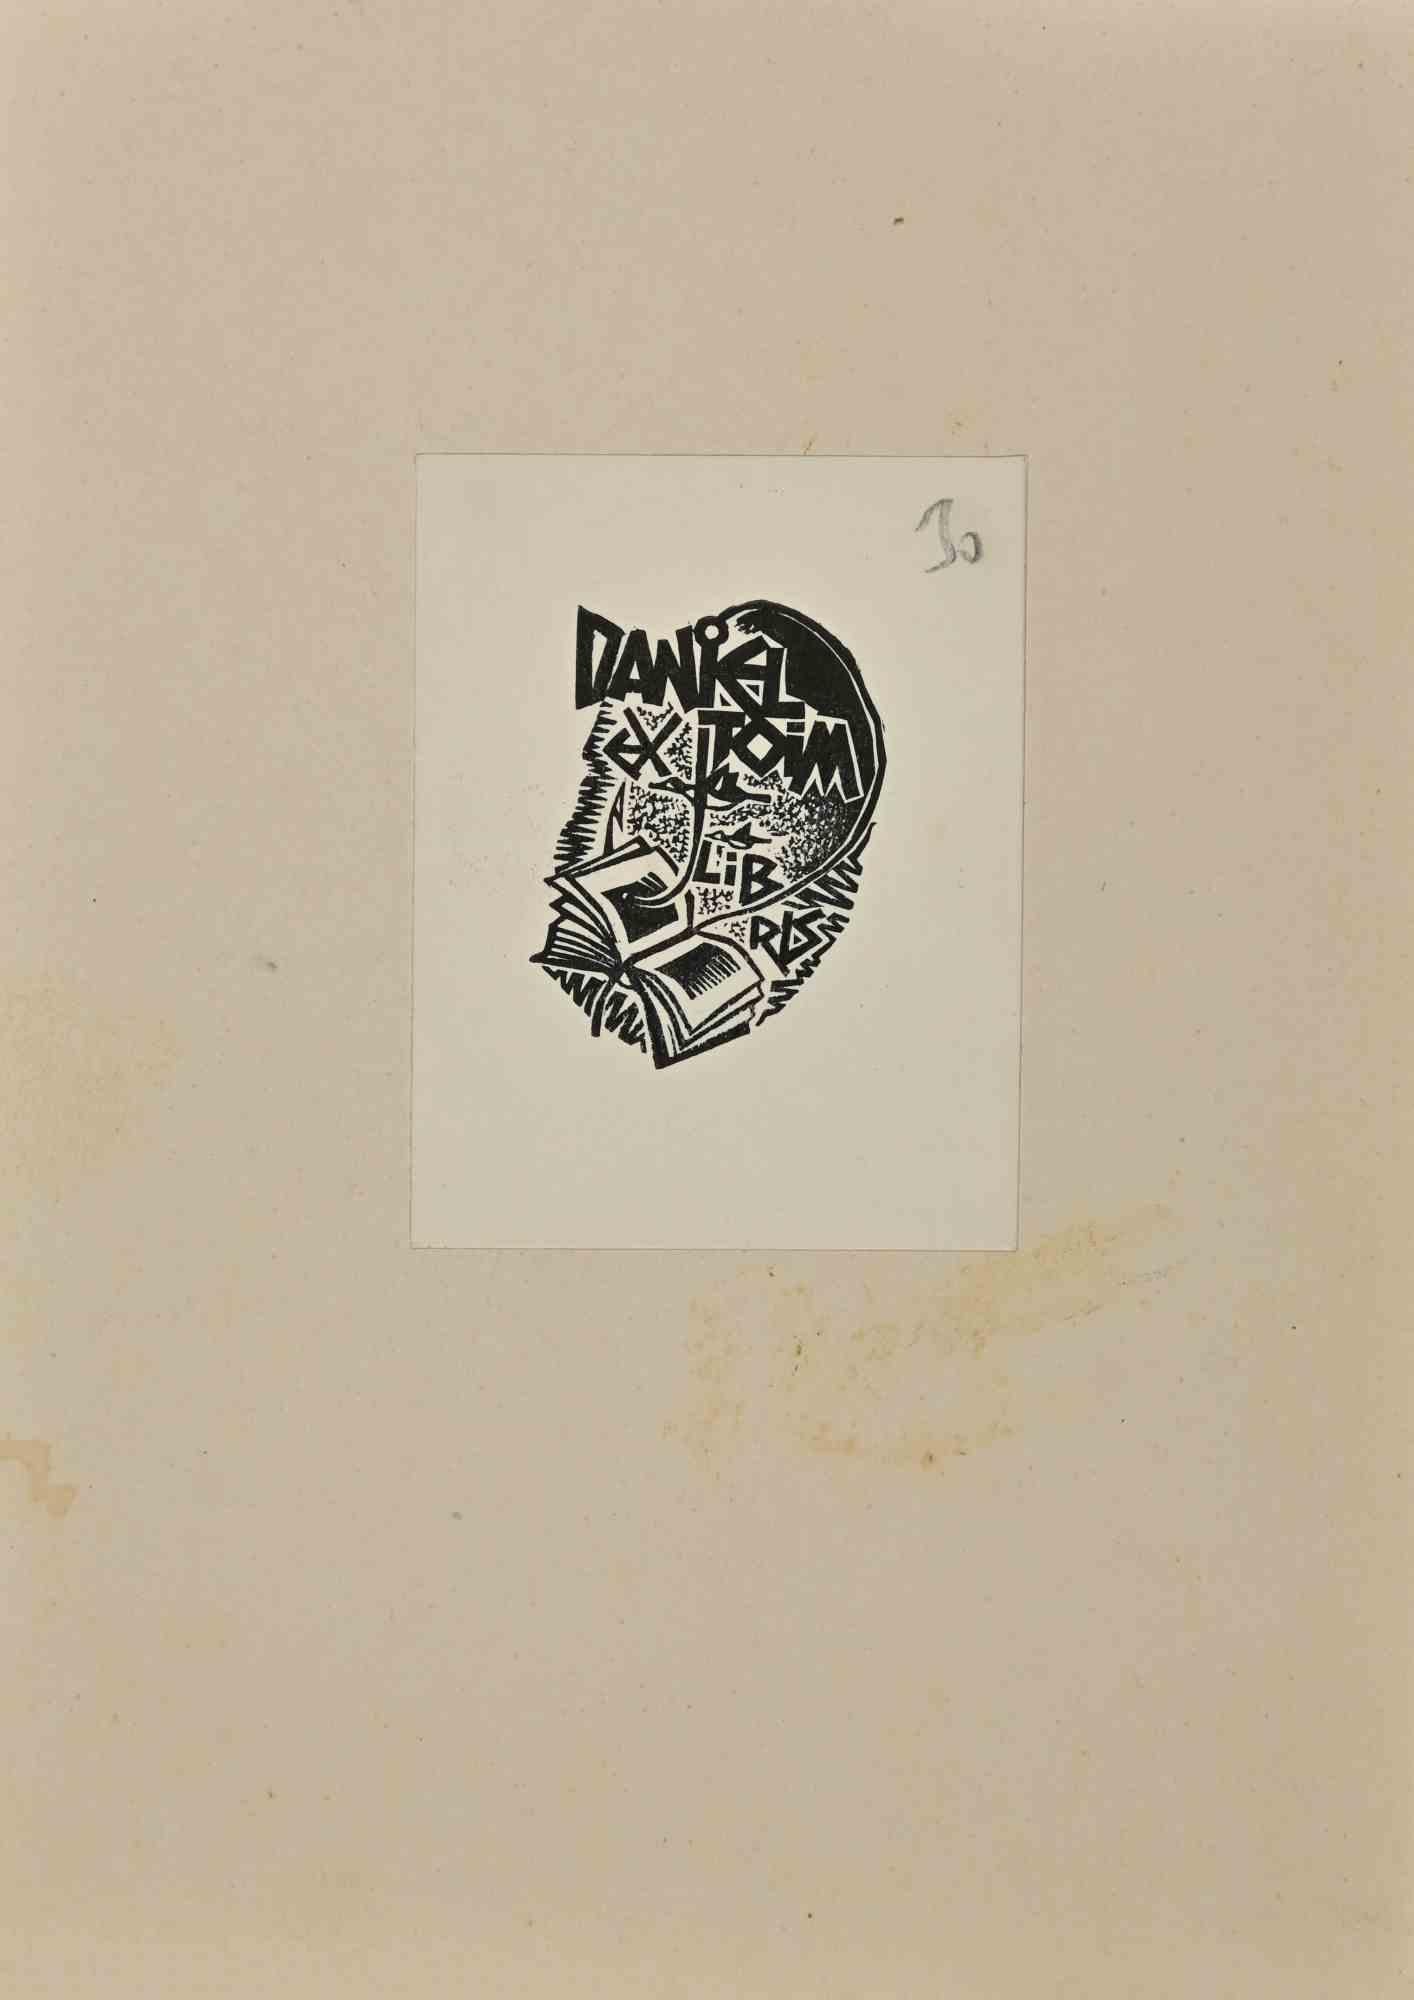 Ex Libris  - Daniel Joim est une œuvre d'art moderne réalisée en 1971.

Ex Libris. Gravure sur bois en noir et blanc sur papier. 

L'œuvre est collée sur du carton.

Dimensions totales : 20,5x 15 cm.

Bonnes conditions.

L'œuvre d'art représente un